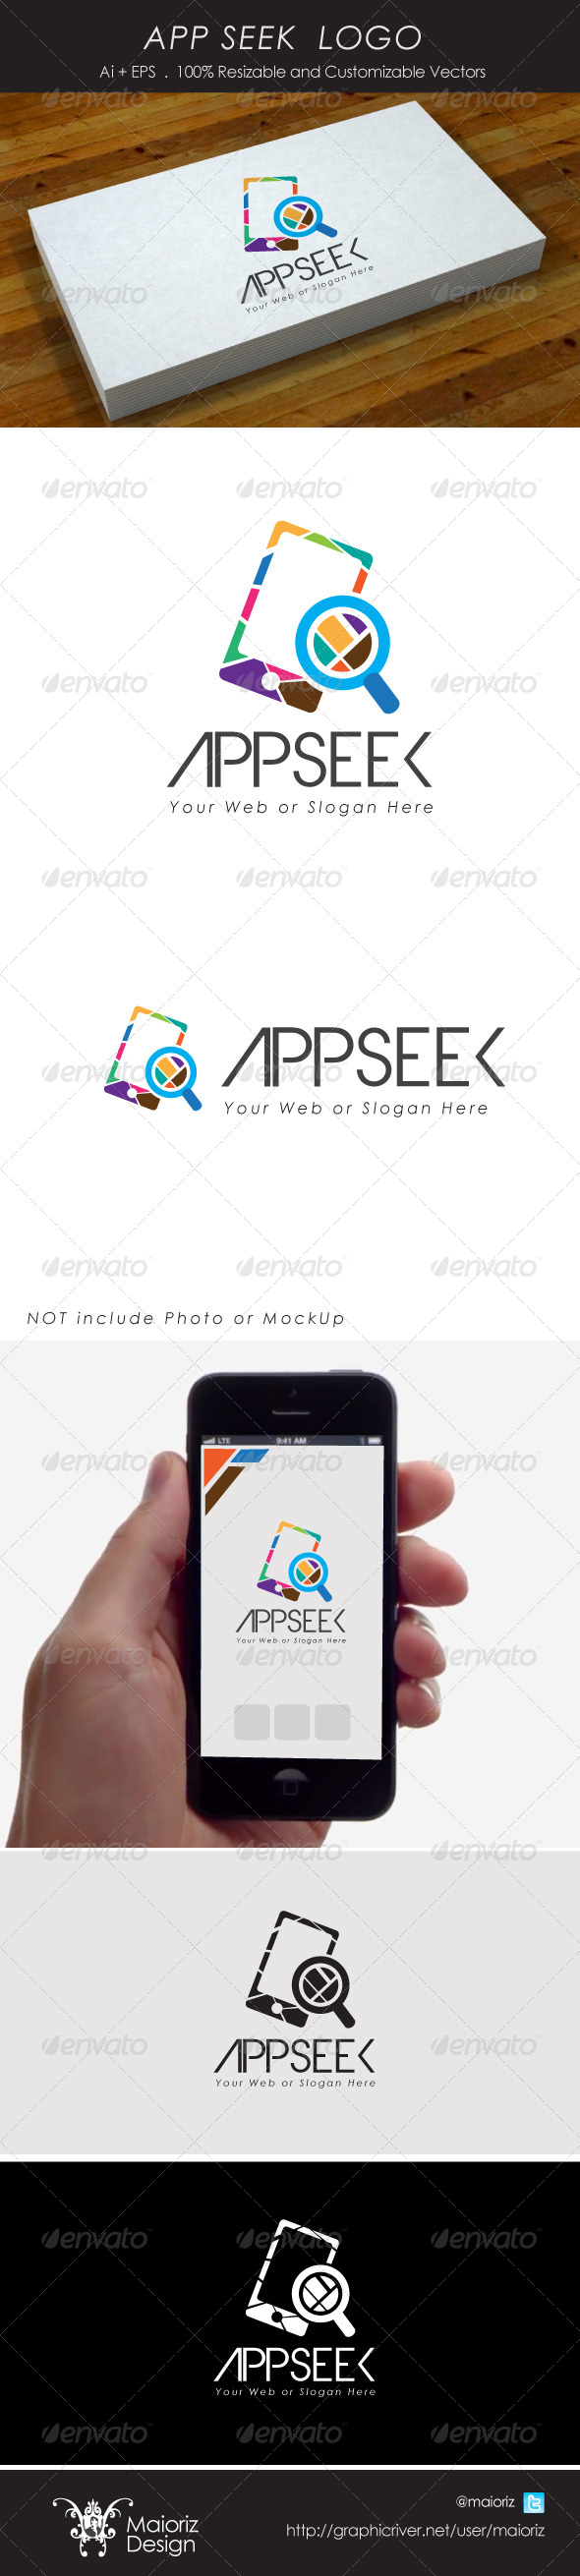 App Seek Logotype